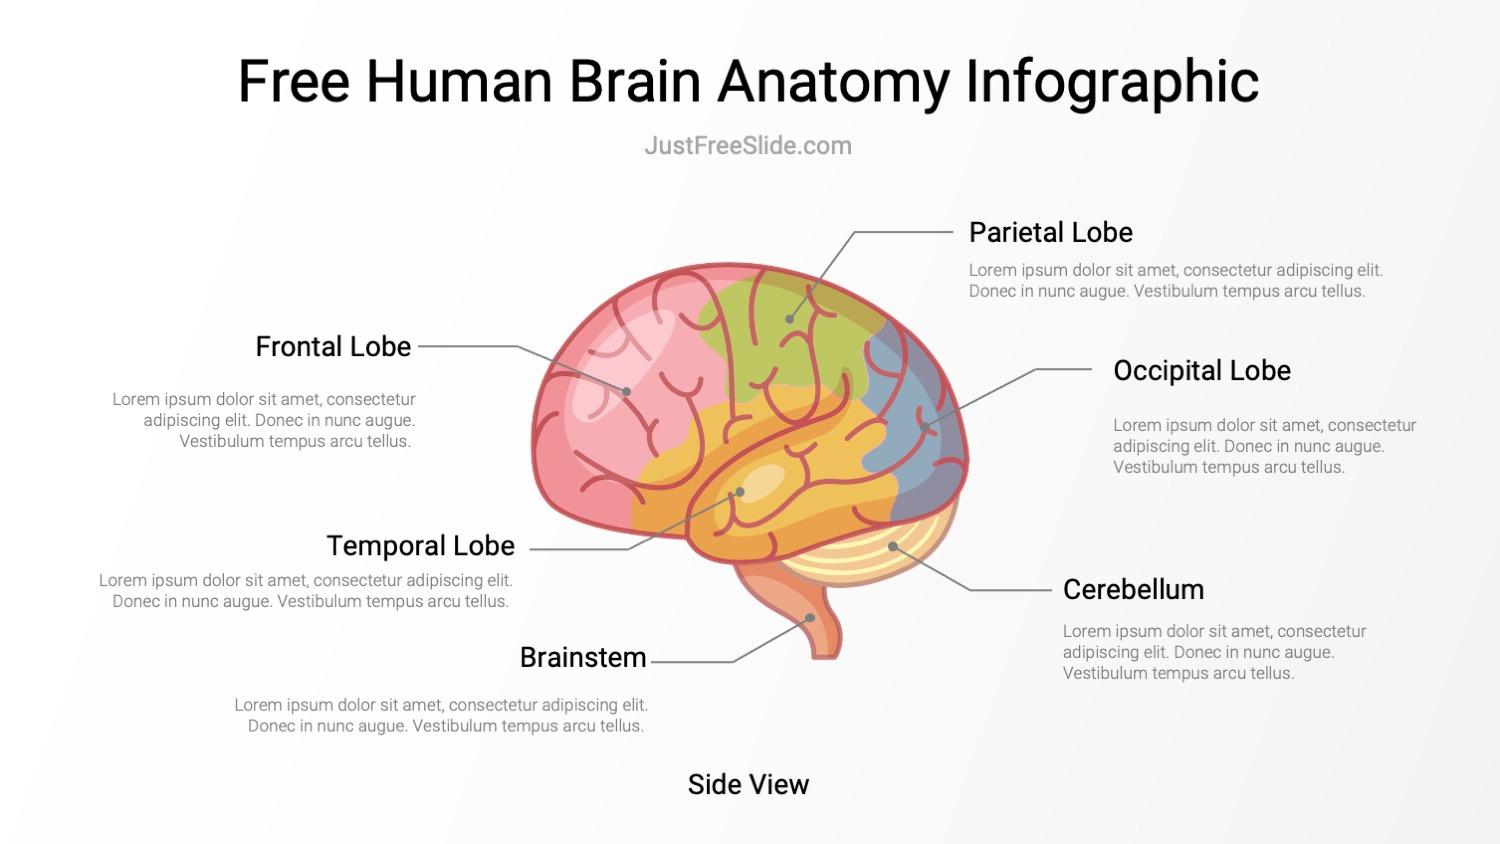 Free Human Brain Anatomy Infographic